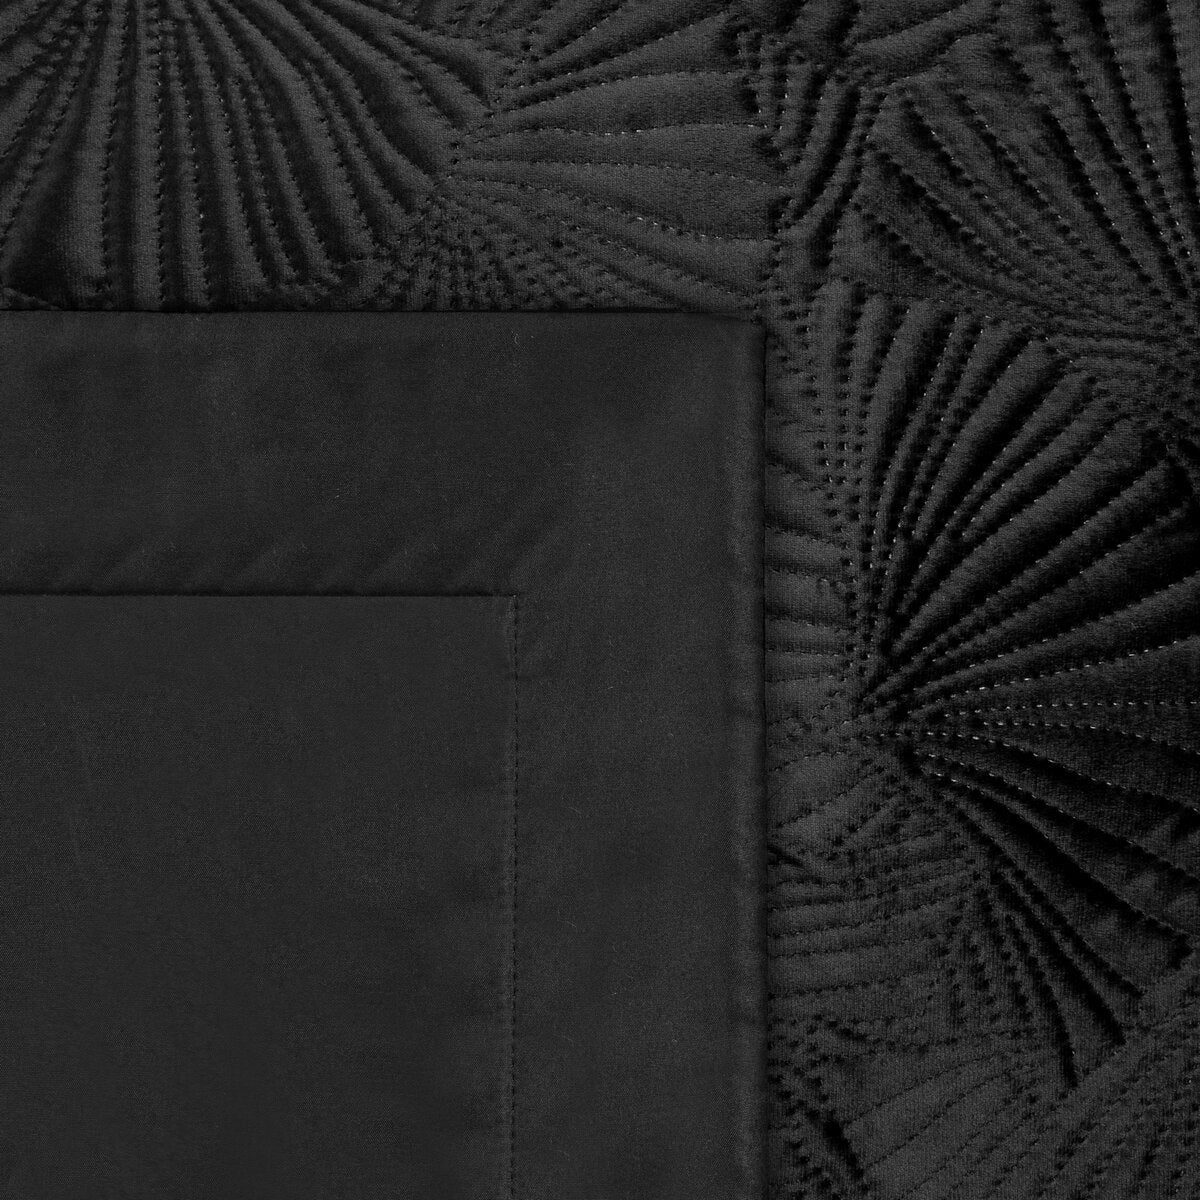 Cuvertură de Pat din catifea nobilă matlasată la cald cu un model botanic de frunze de ginkgo negru Colecția Limitată MUSA Perdele de Poveste